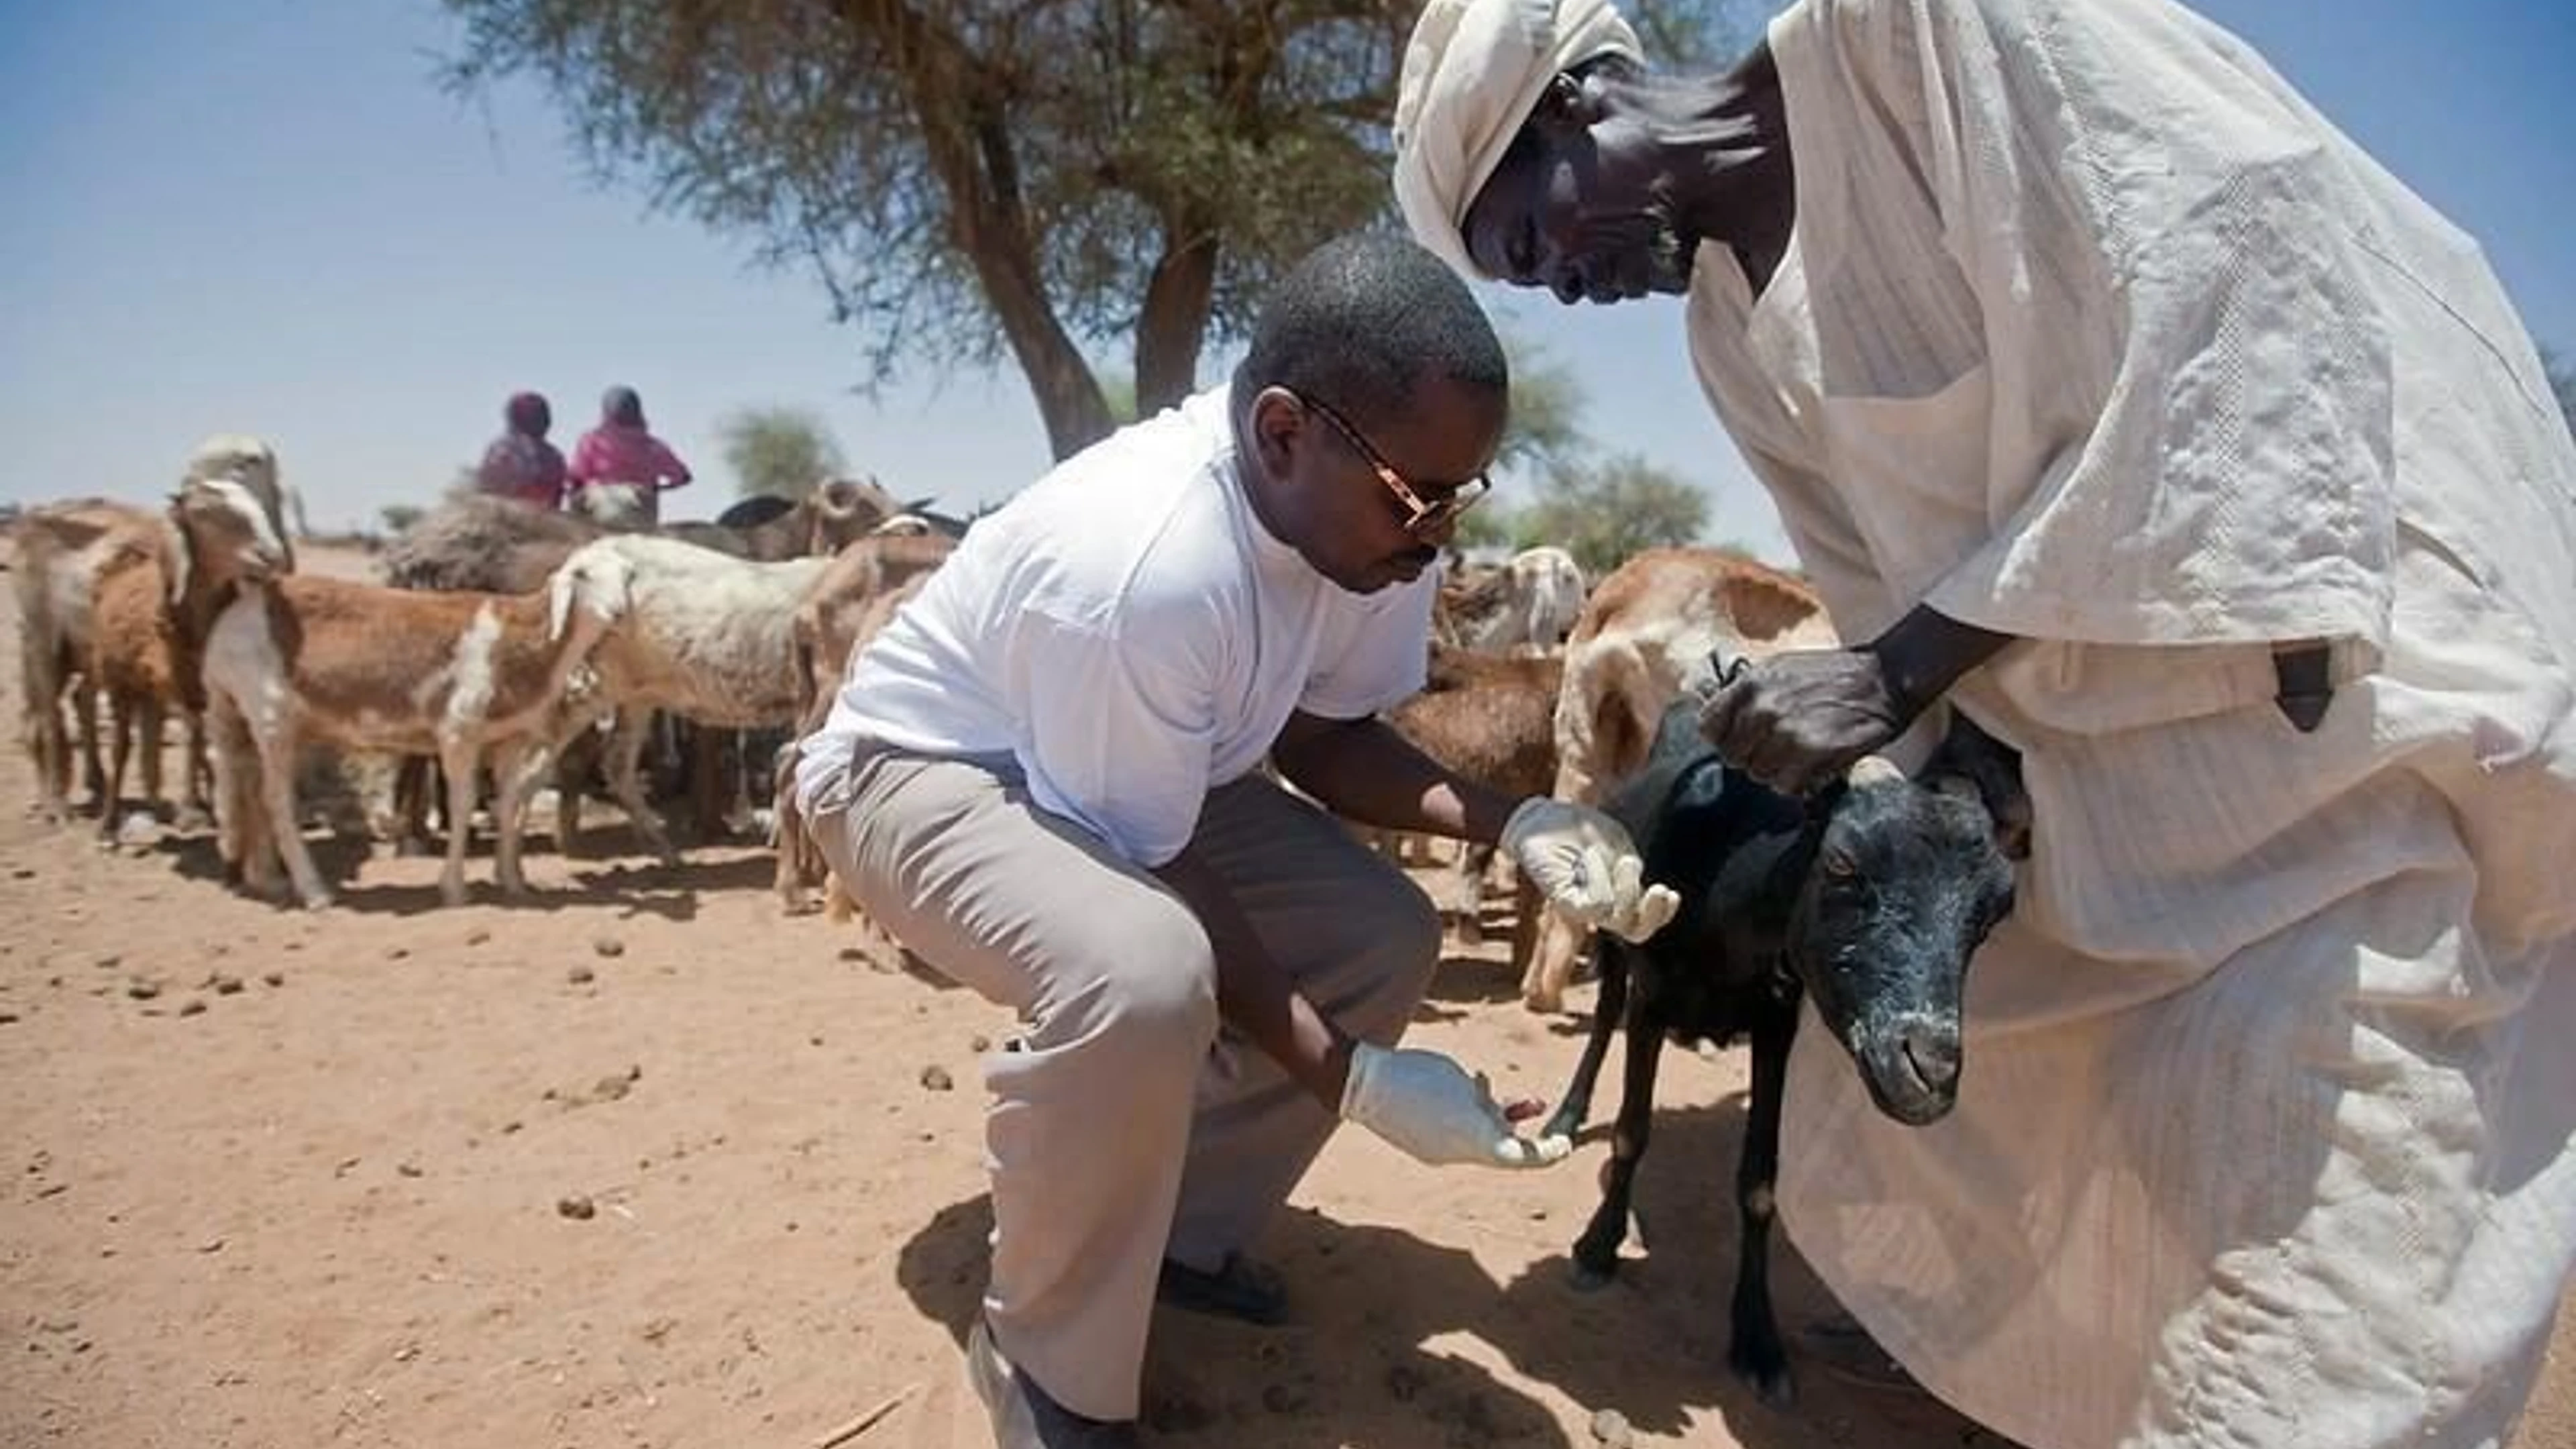 goat_receiving_care_in_sudan-unamid